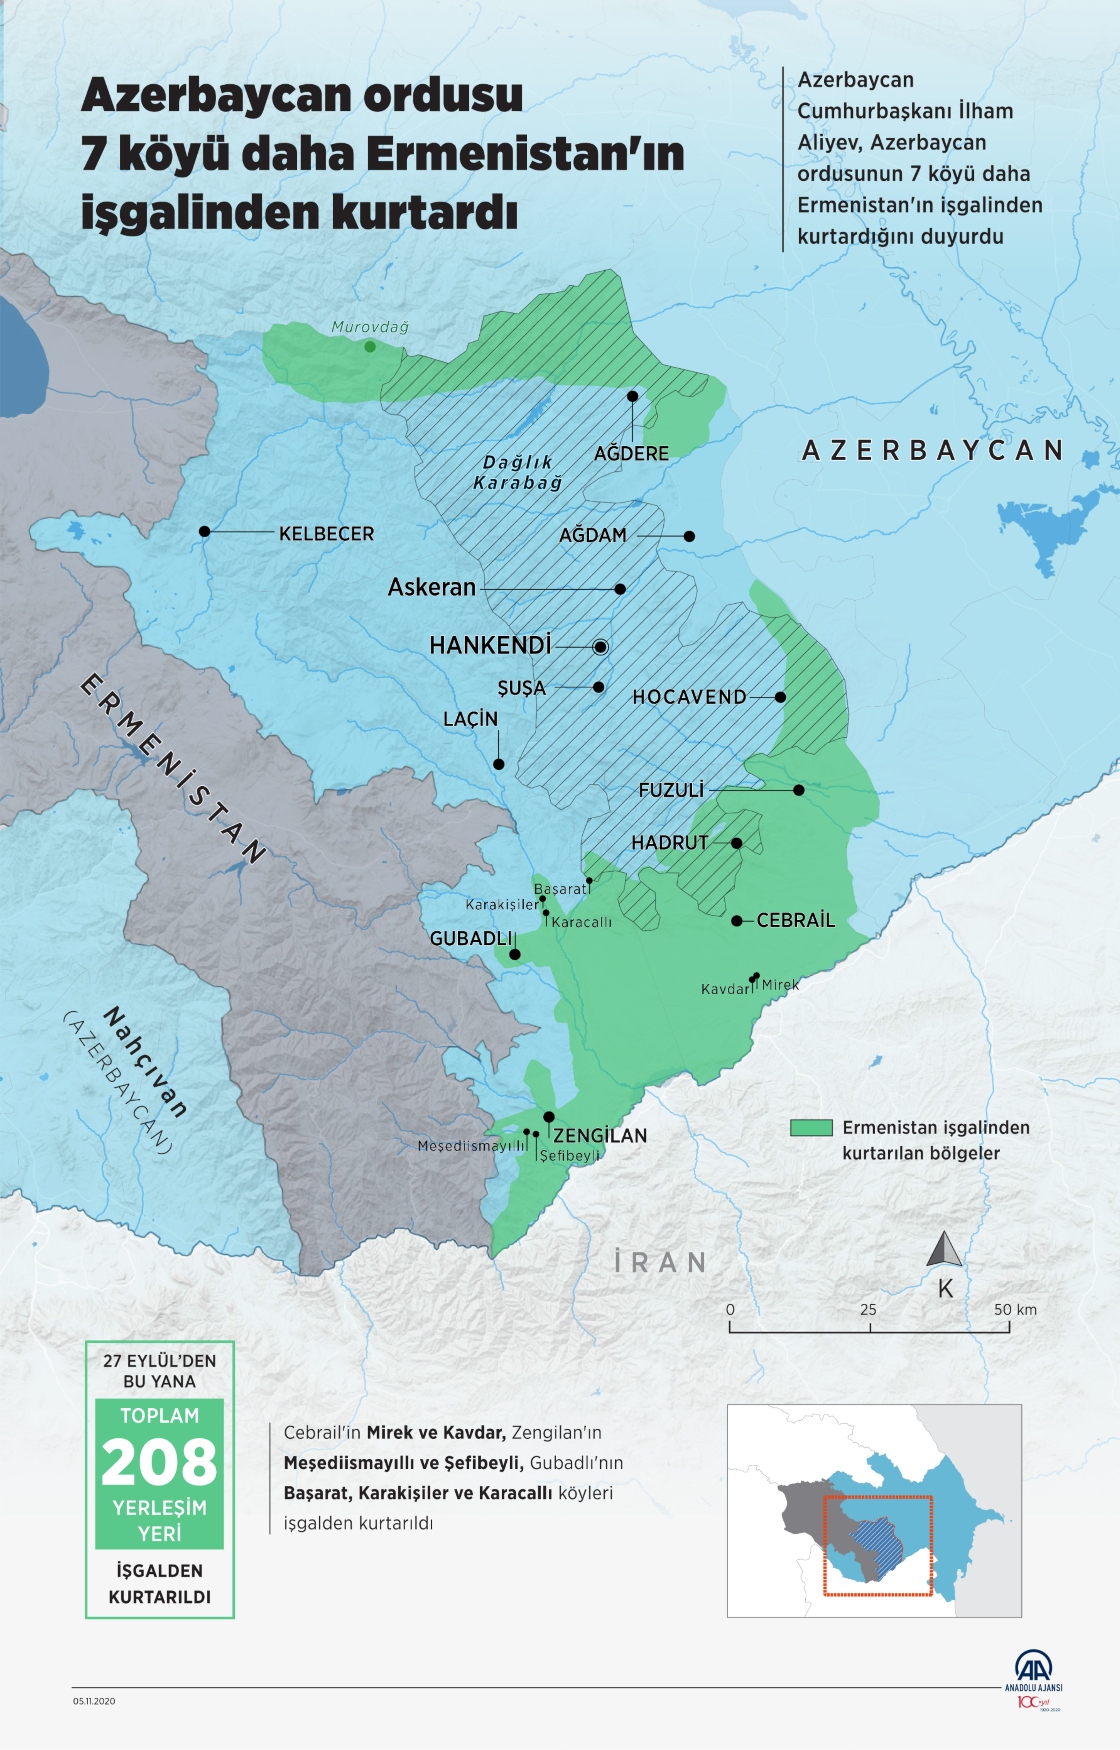 Azerbaycan ordusu 7 köyü daha Ermenistan'ın işgalinden kurtardı